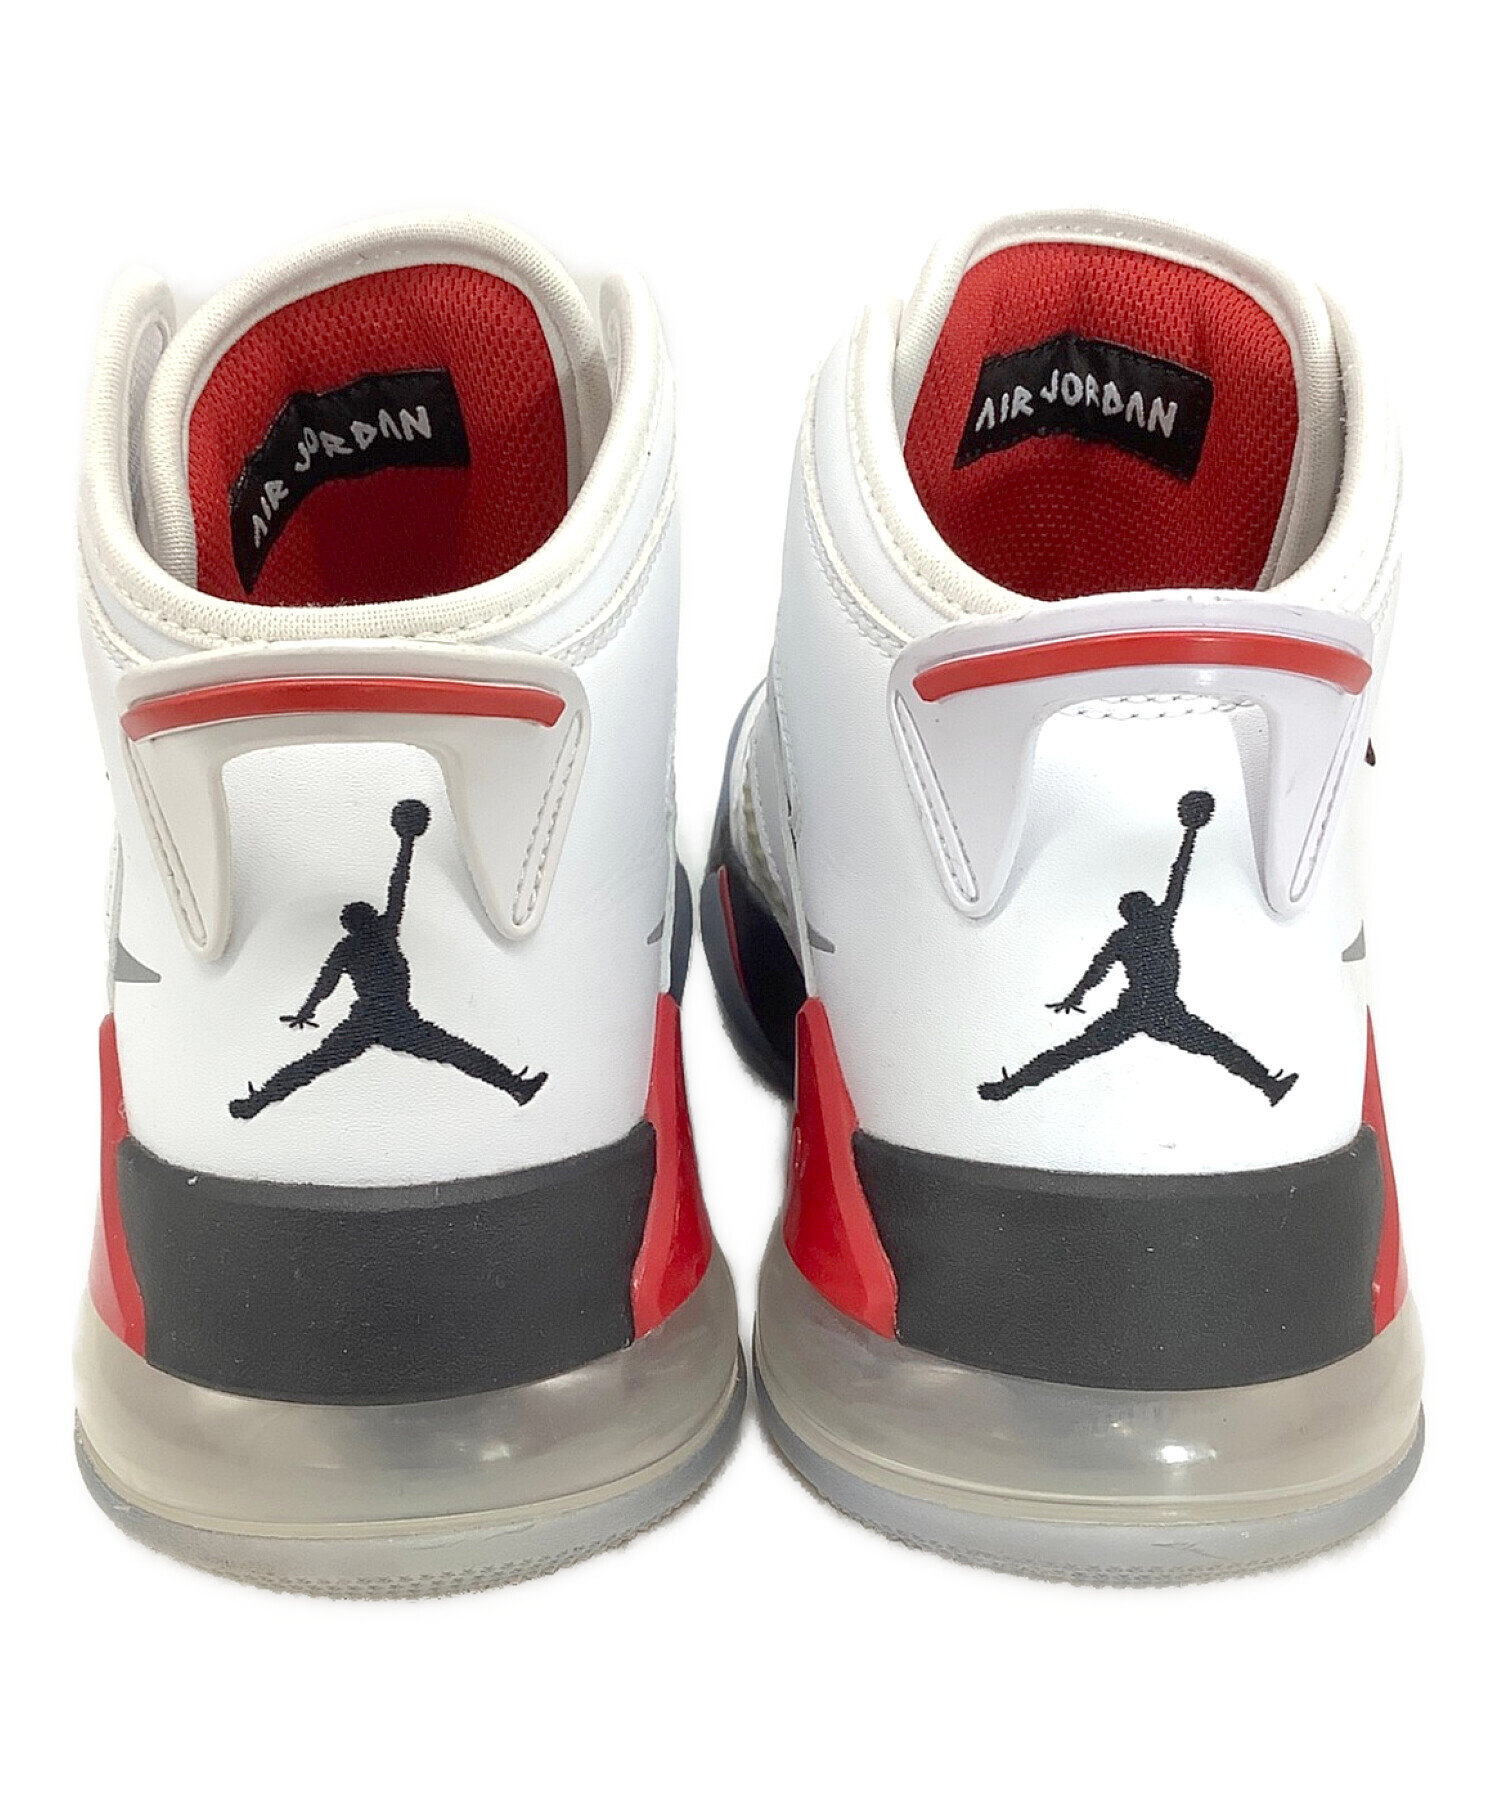 発売開始27.5cm Nike Air Jordan Mars PSG 国内正規品 スニーカー